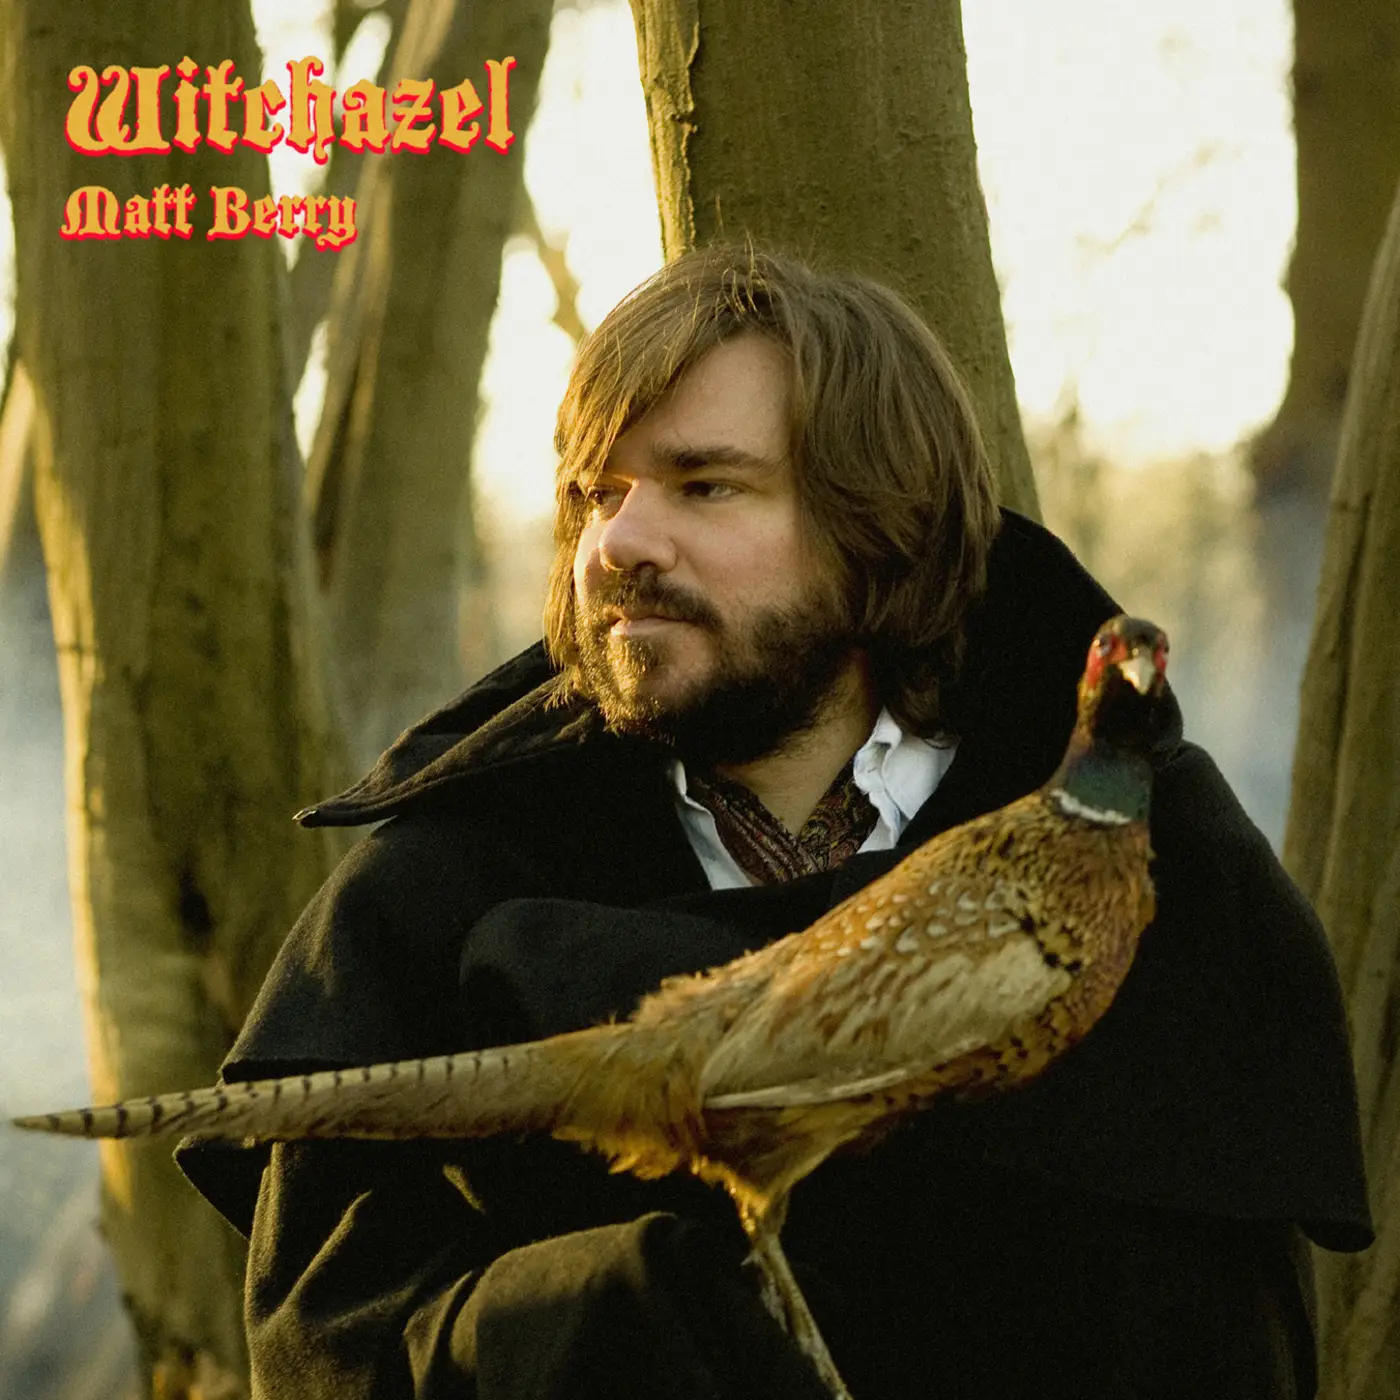 <strong>Matt Berry - Witchazel</strong> (Vinyl LP - brown)